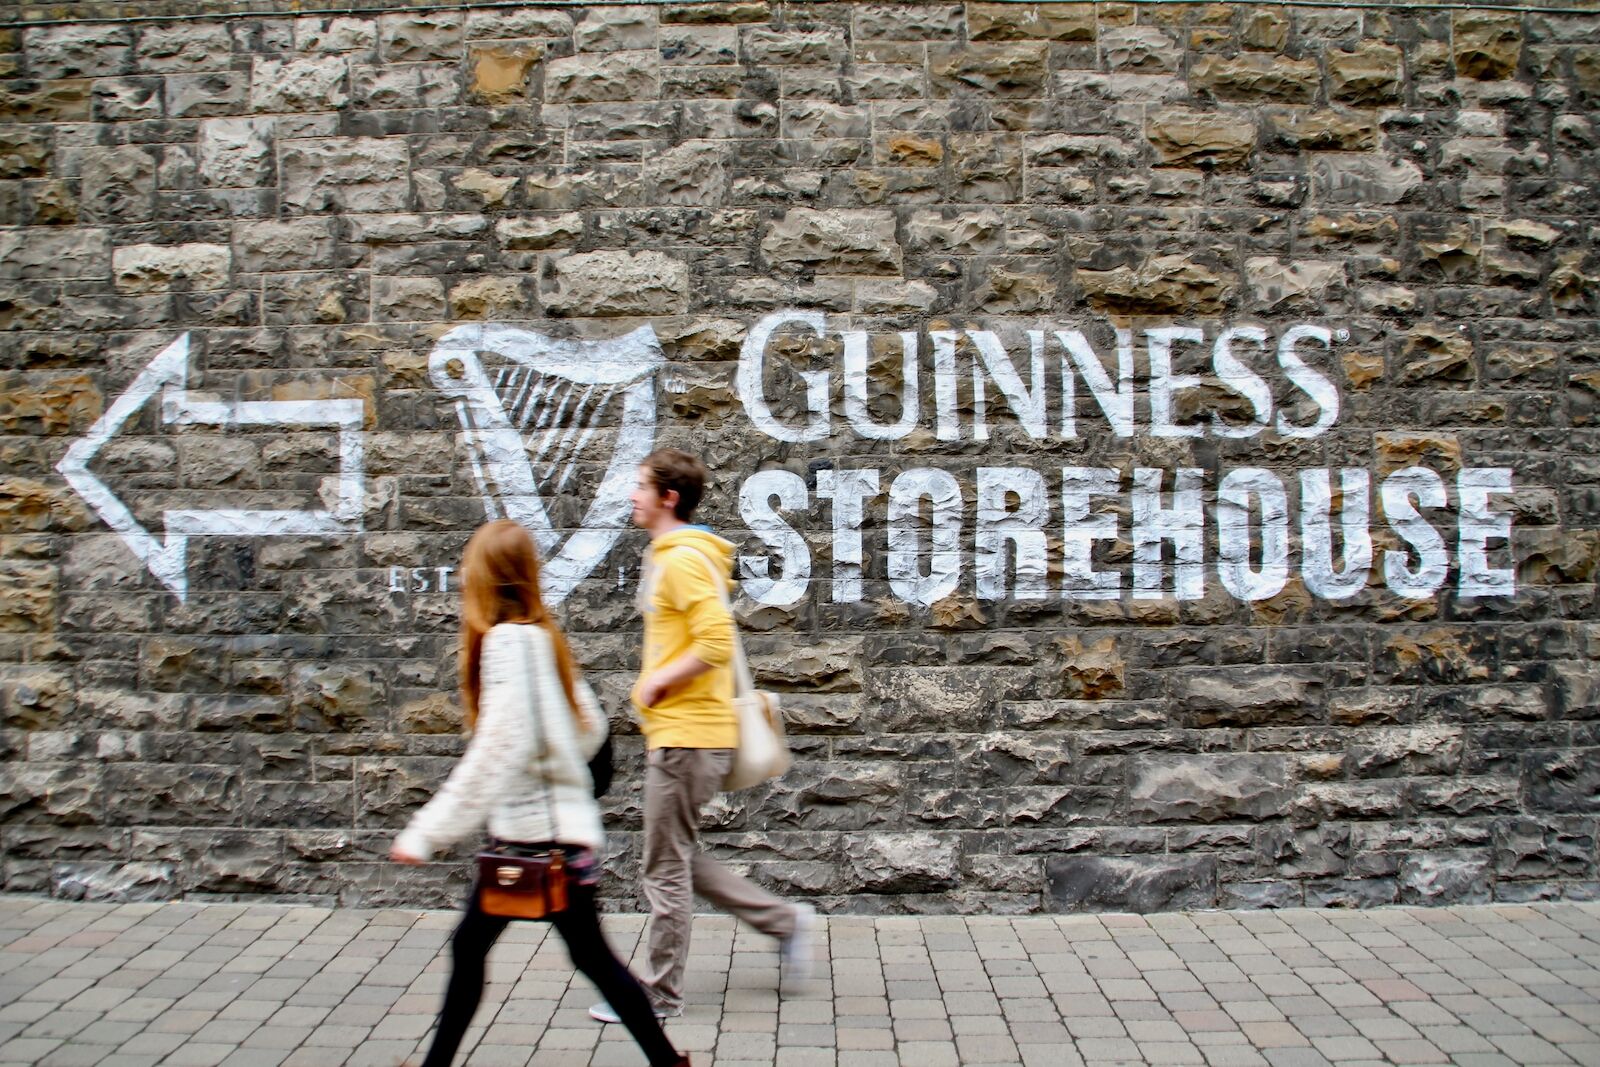 Dos jóvenes caminan junto a la señal de un muro que indica Guinness Storehouse.